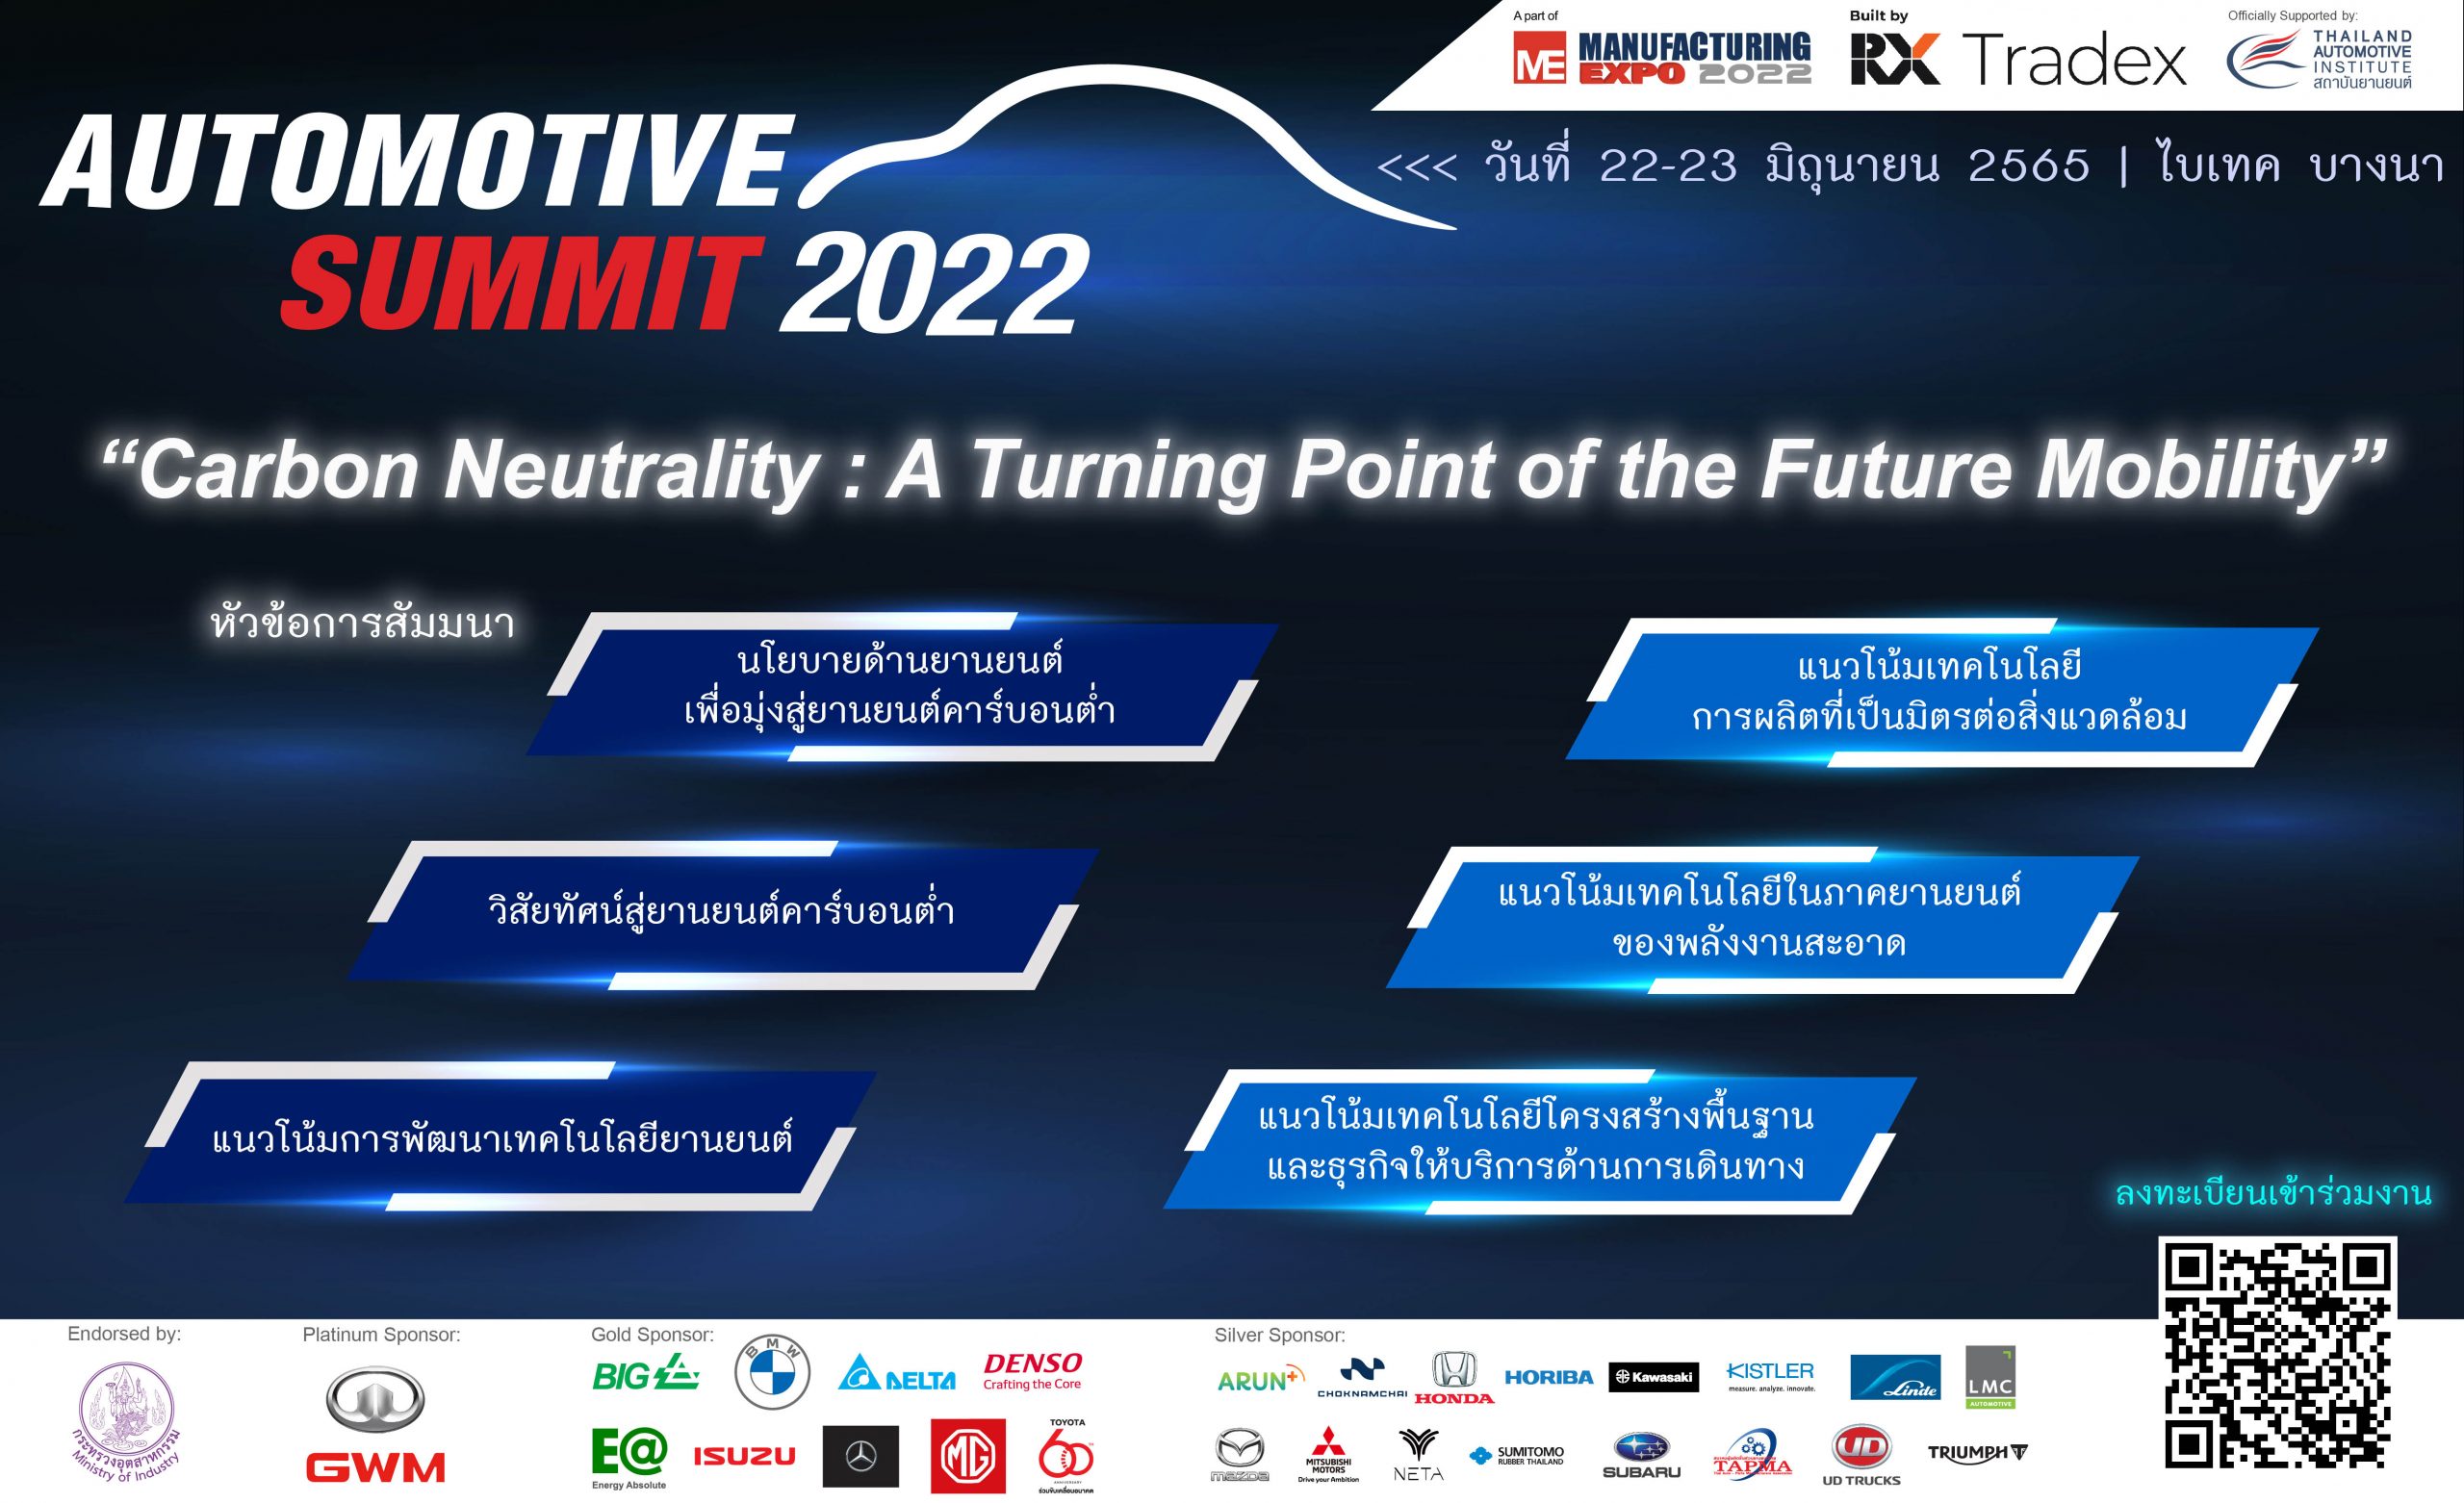 สัมมนาฟรี! “Automotive Summit 2022 ความเป็นกลางทางคาร์บอน จุดเปลี่ยนของยานยนต์แห่งอนาคต” ในวันที่ 22 – 23 มิ.ย. 2565